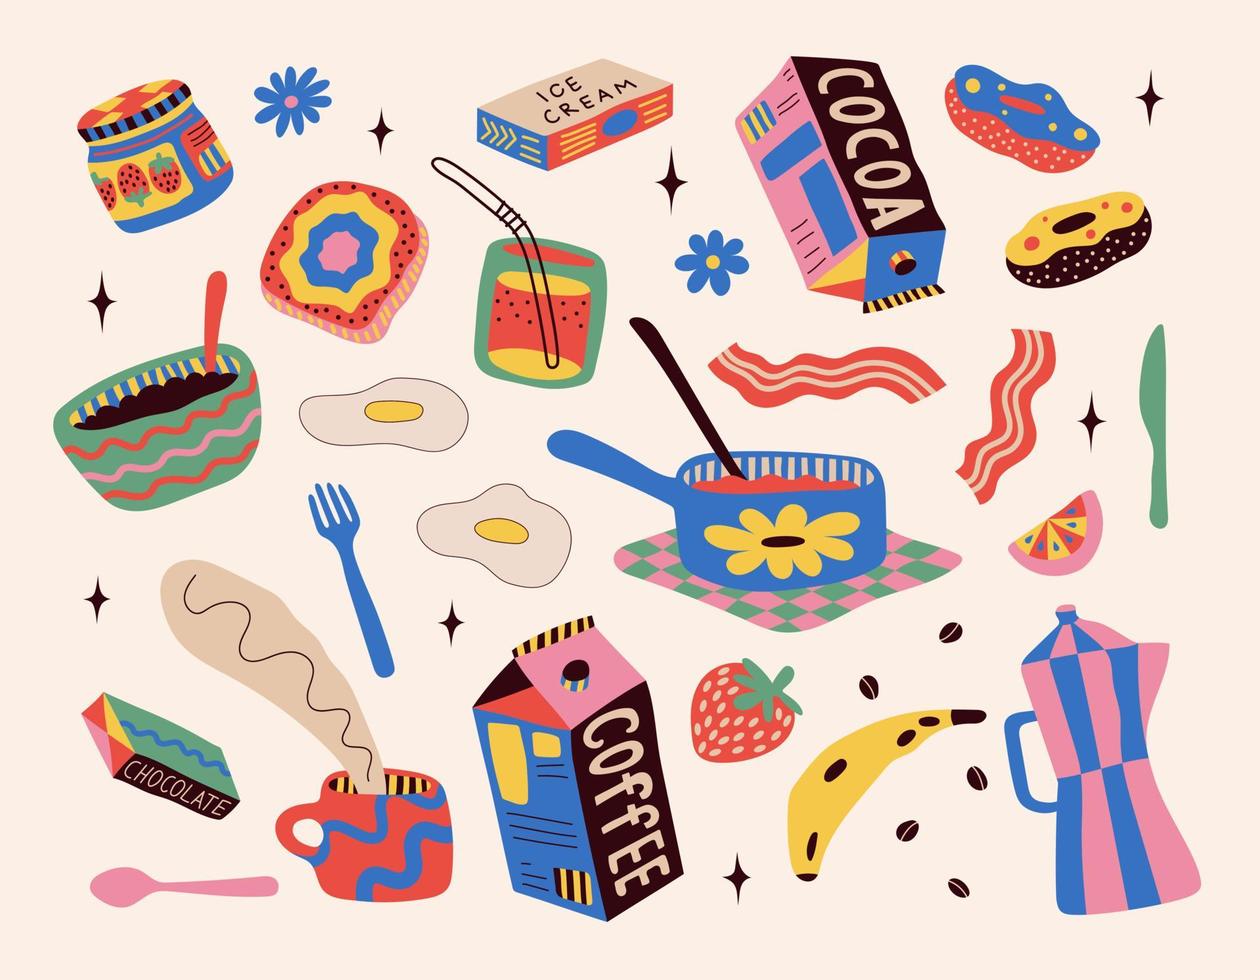 impostato di adesivi con disegnato cibo. disegno stile. vario colorato bevande, cupcakes, ciambelle, frutta, caffè, fanans. mano disegnato moda vettore illustrazione.